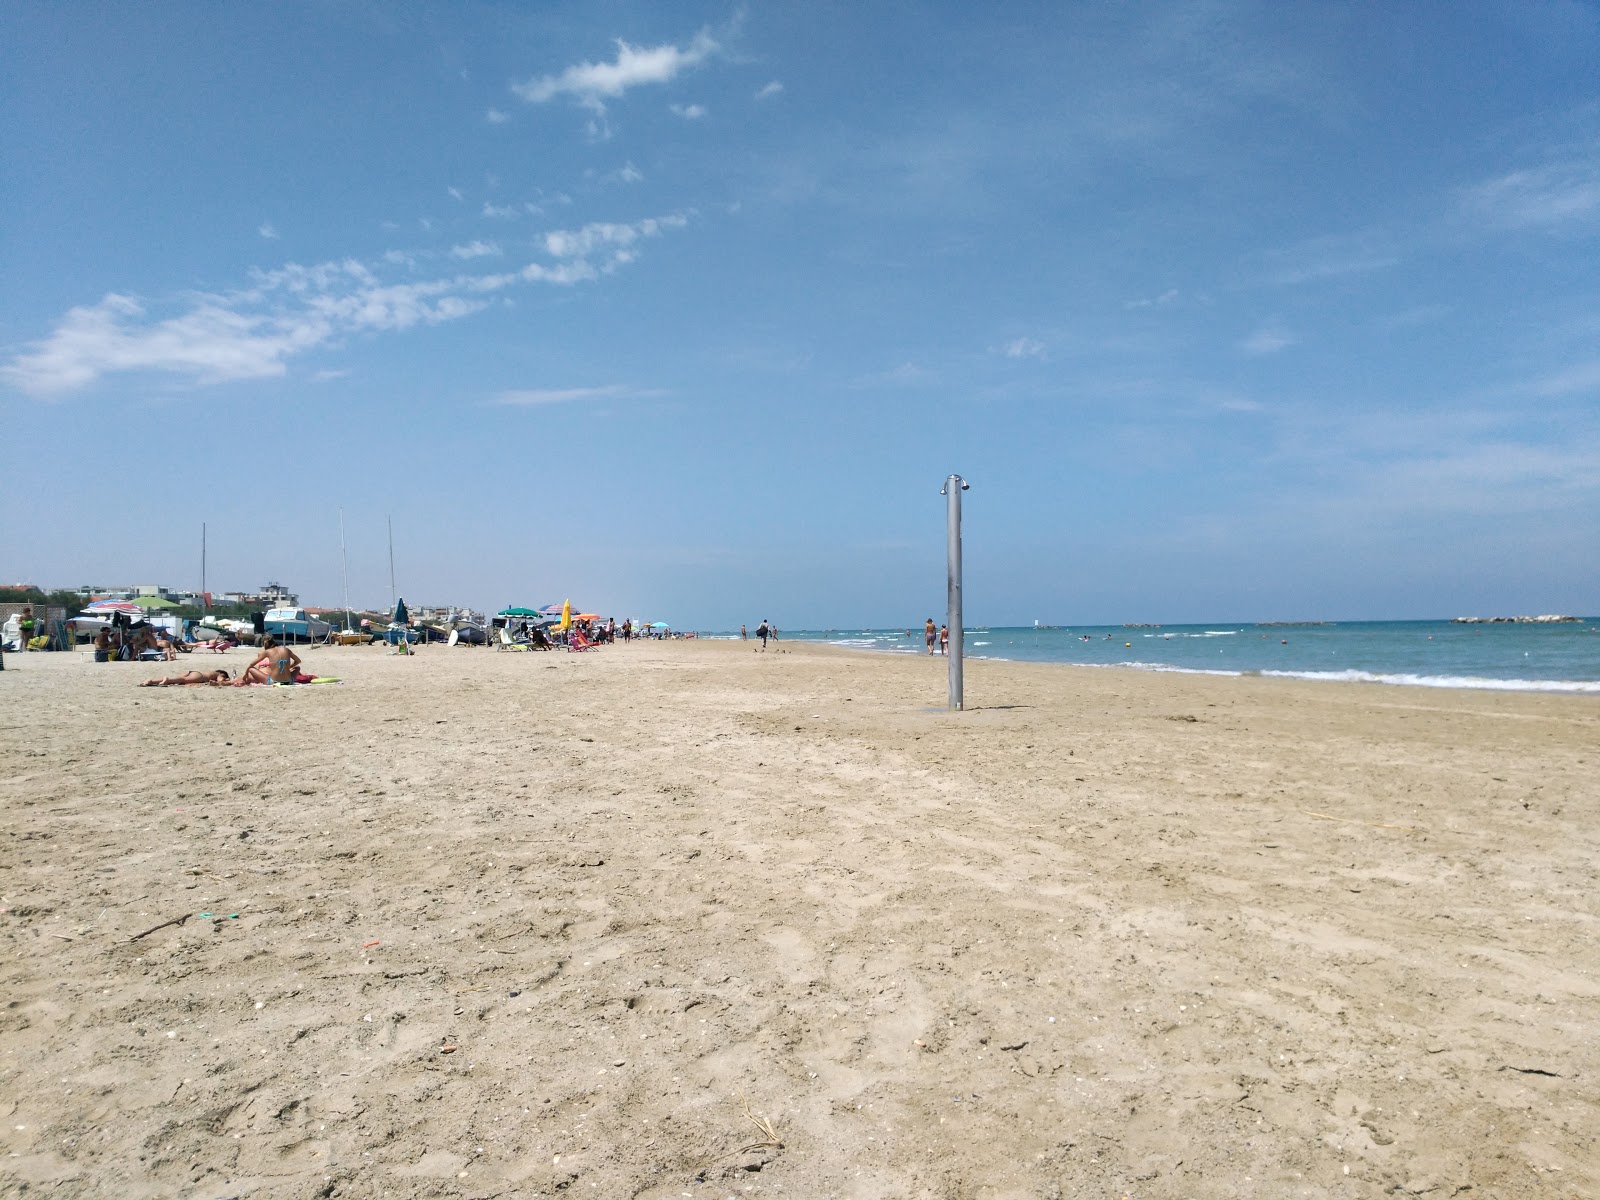 Senigallia beach'in fotoğrafı plaj tatil beldesi alanı